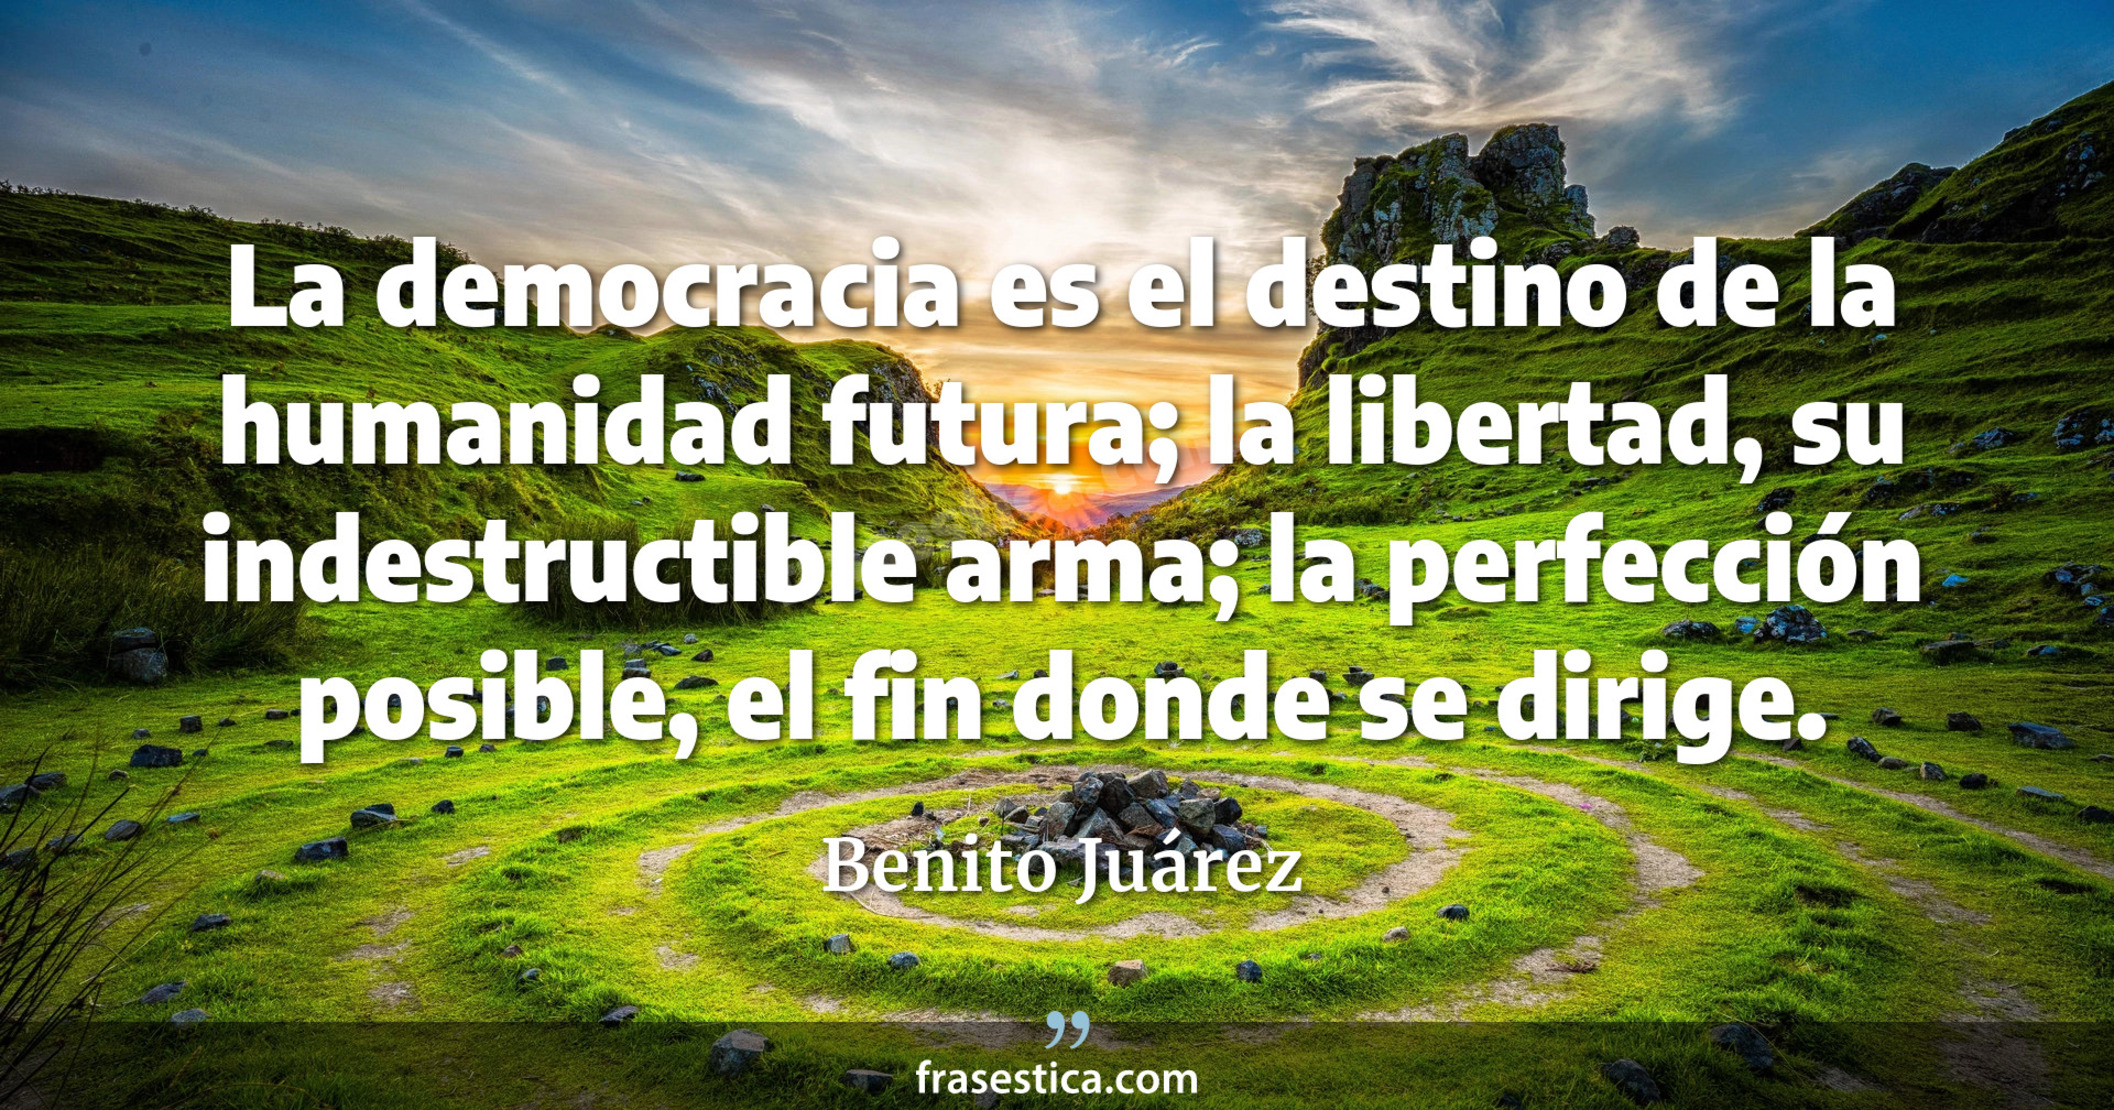 La democracia es el destino de la humanidad futura; la libertad, su indestructible arma; la perfección posible, el fin donde se dirige. - Benito Juárez